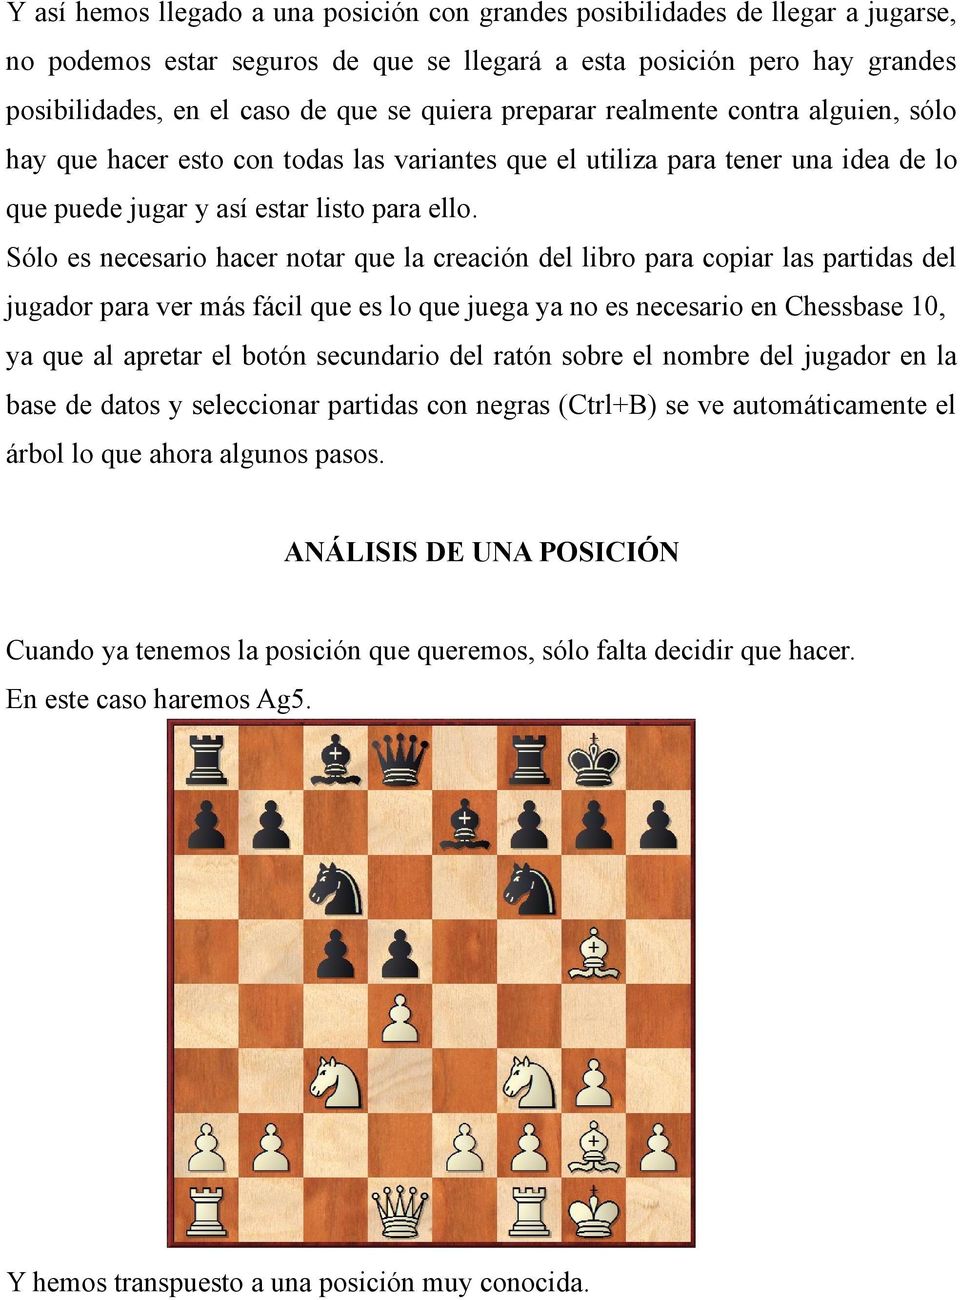 Sólo es necesario hacer notar que la creación del libro para copiar las partidas del jugador para ver más fácil que es lo que juega ya no es necesario en Chessbase 10, ya que al apretar el botón